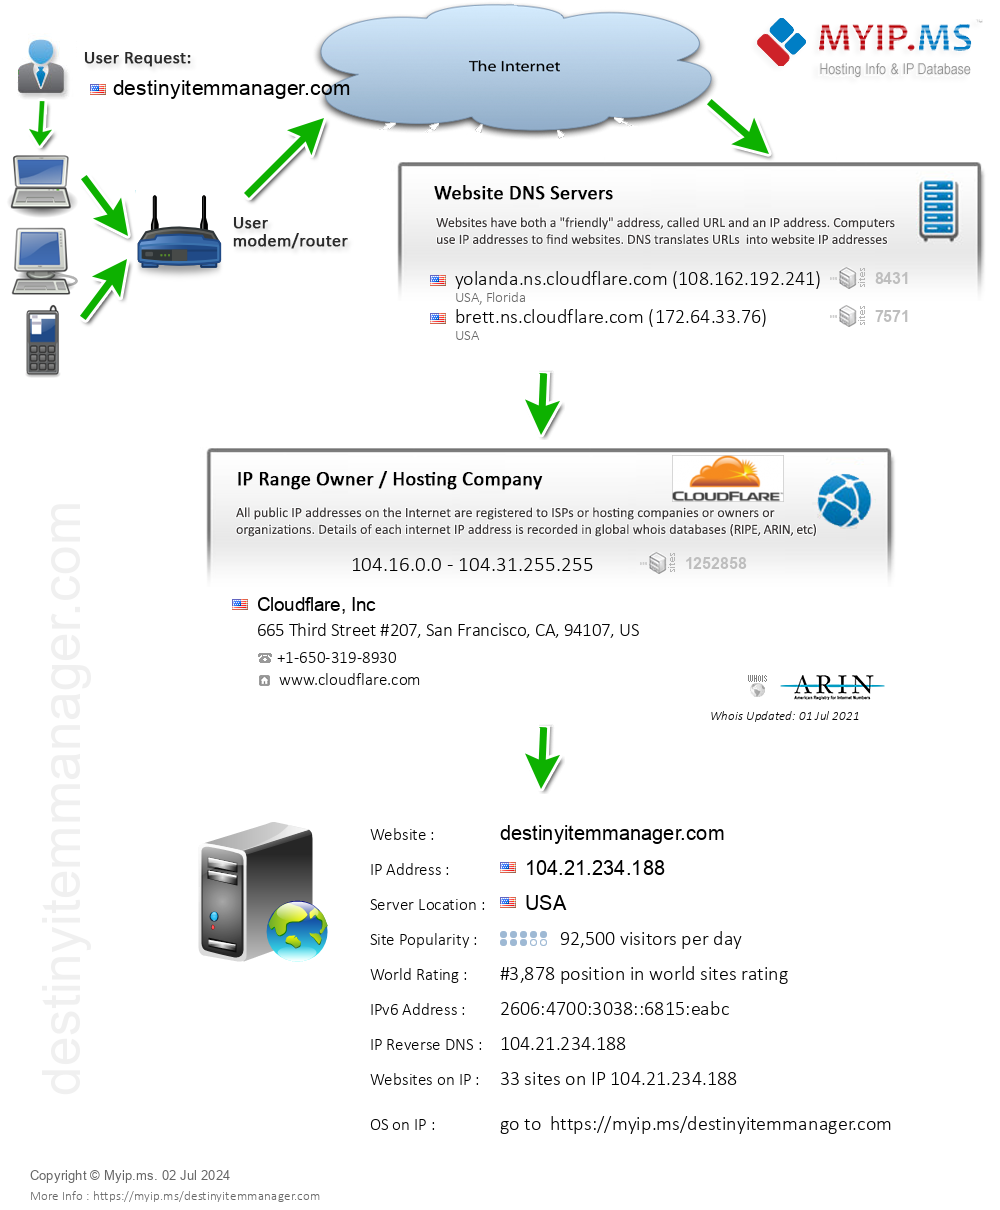 Destinyitemmanager.com - Website Hosting Visual IP Diagram